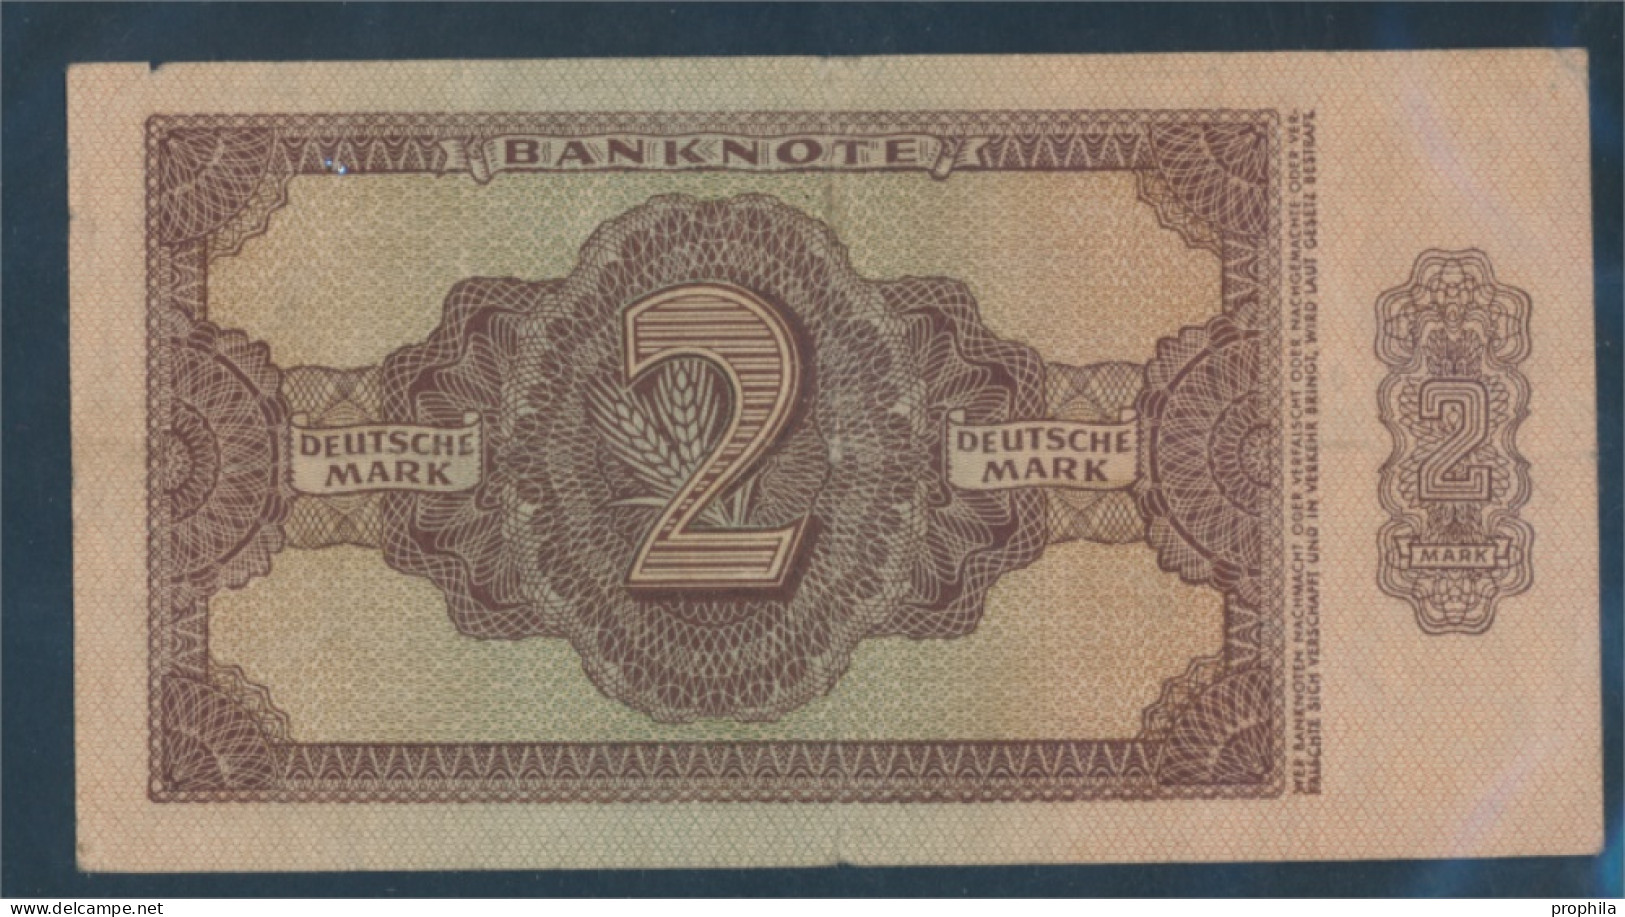 DDR Rosenbg: 341c KN 6stellig, Austauschnote Gebraucht (III) 1948 2 Deutsche Mark (10298890 - 2 Deutsche Mark